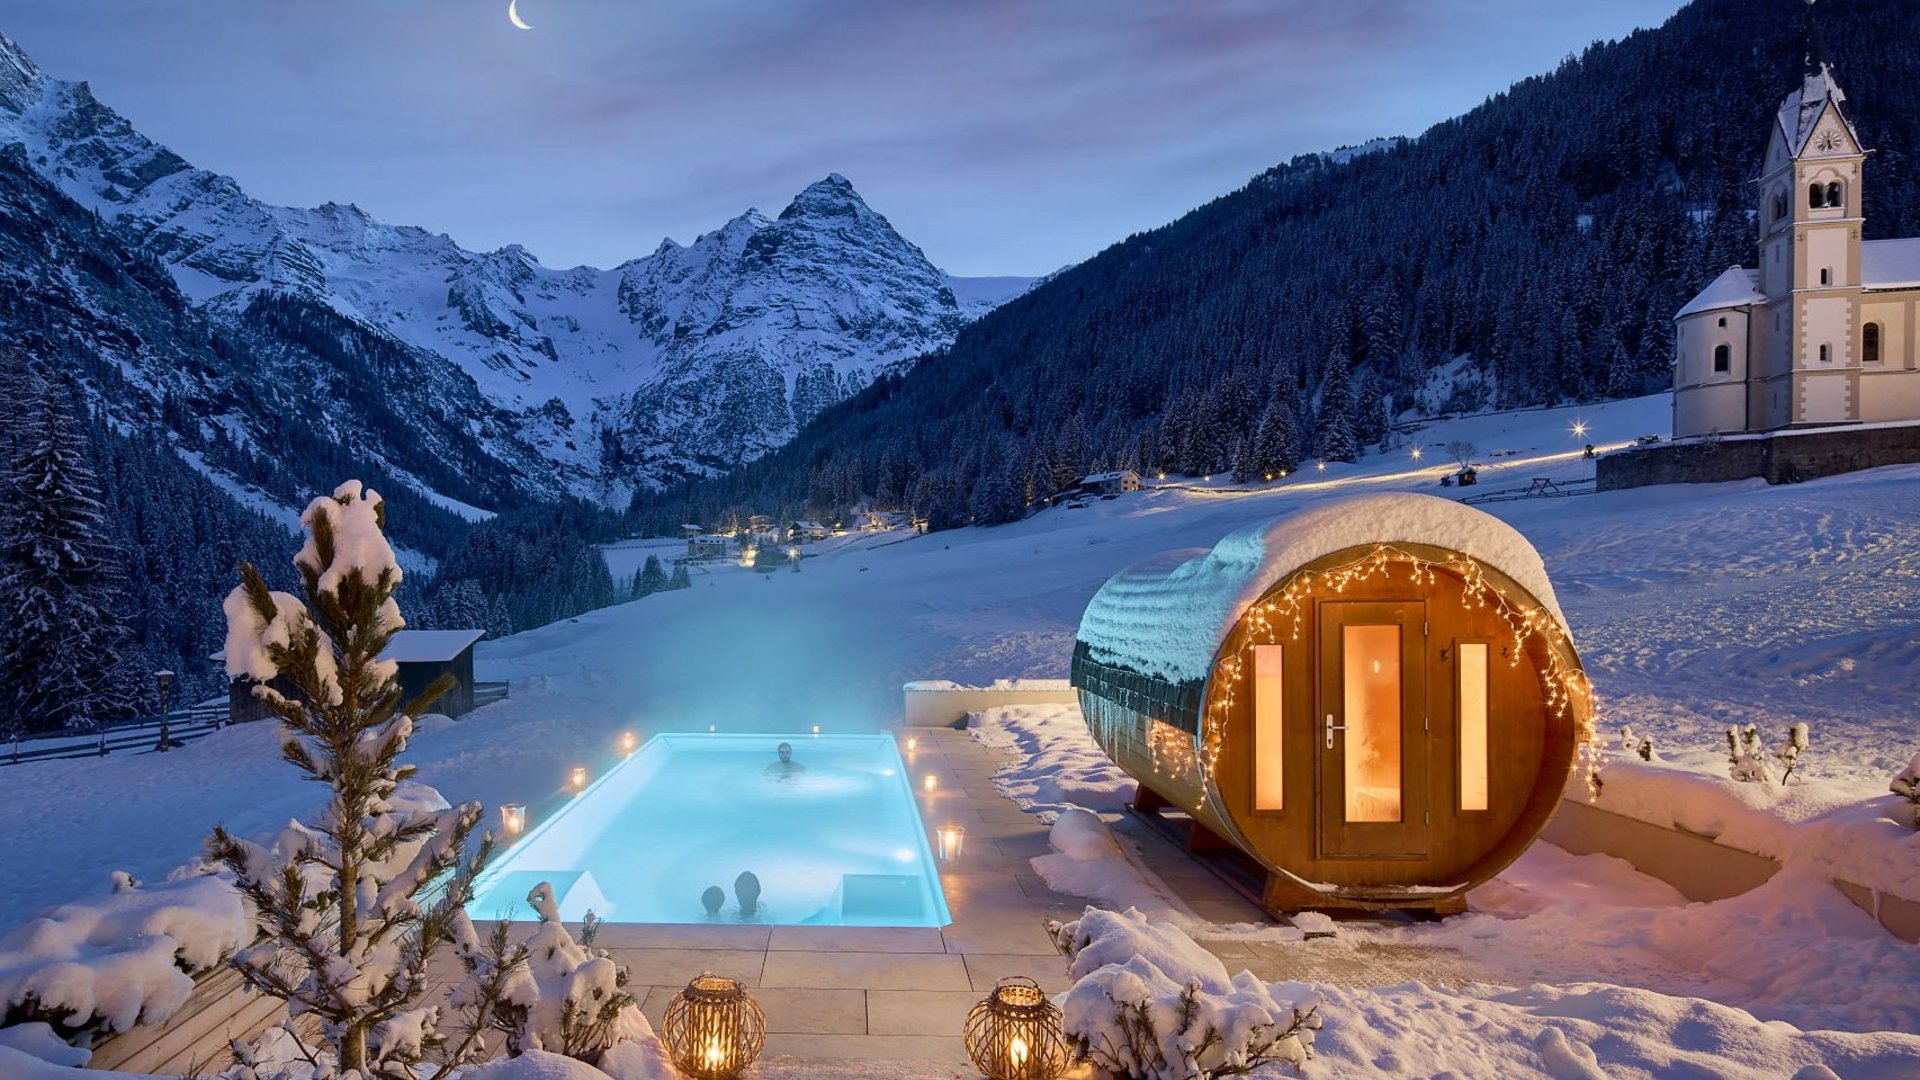 Nachtansicht des beheizten Außenpools und der angrenzenden Sauna am Hotel Bella Vista mit einer Kapelle im Hintergrund, eingebettet in die schneebedeckte Berglandschaft Südtirols.